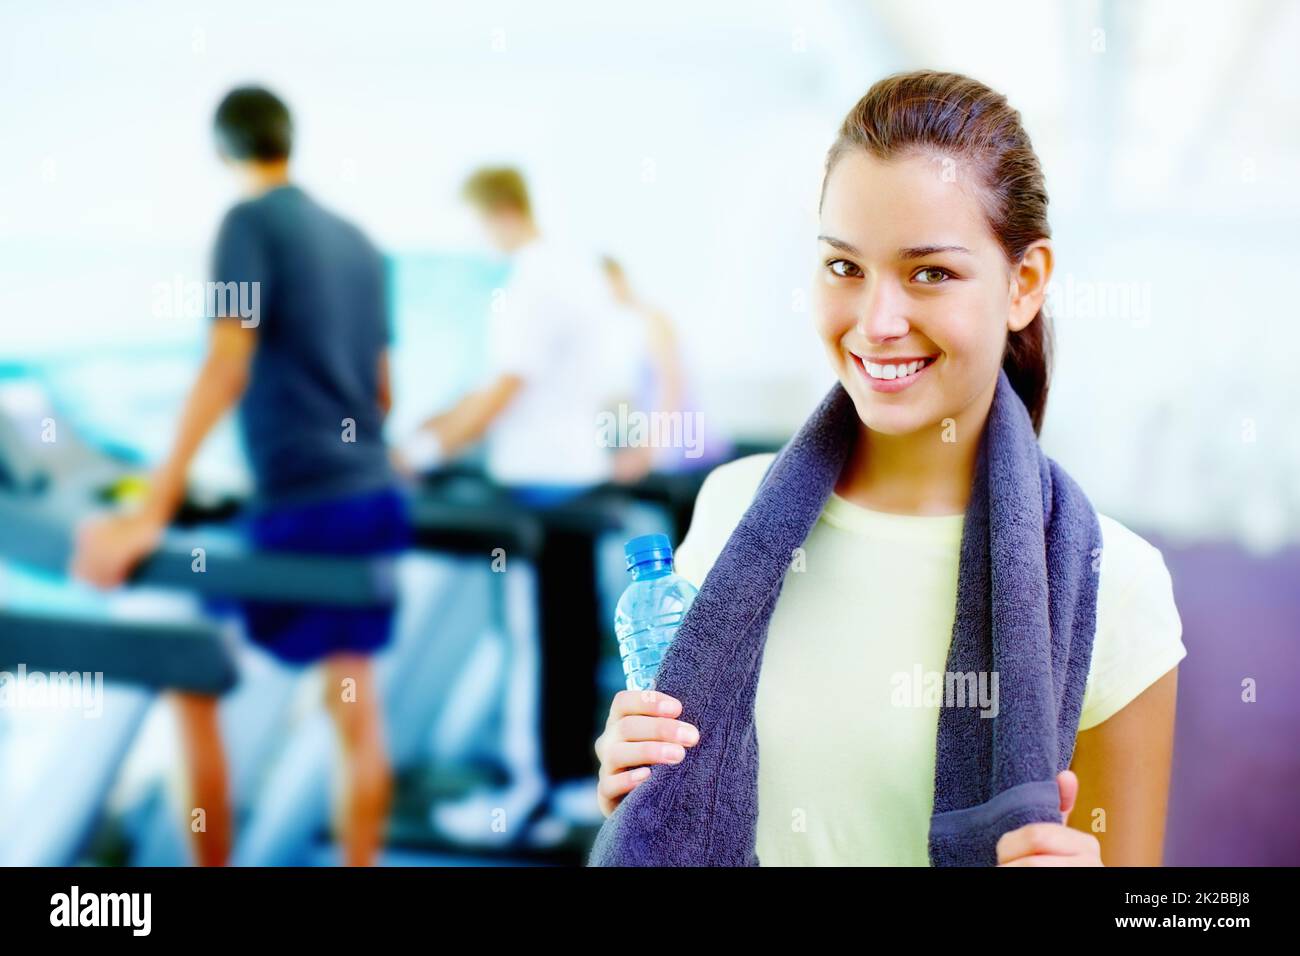 Junge Frau lächelt. Porträt einer jungen lächelnden Frau, die eine Wasserflasche und ein Handtuch hält, und Menschen, die im Hintergrund arbeiten. Stockfoto